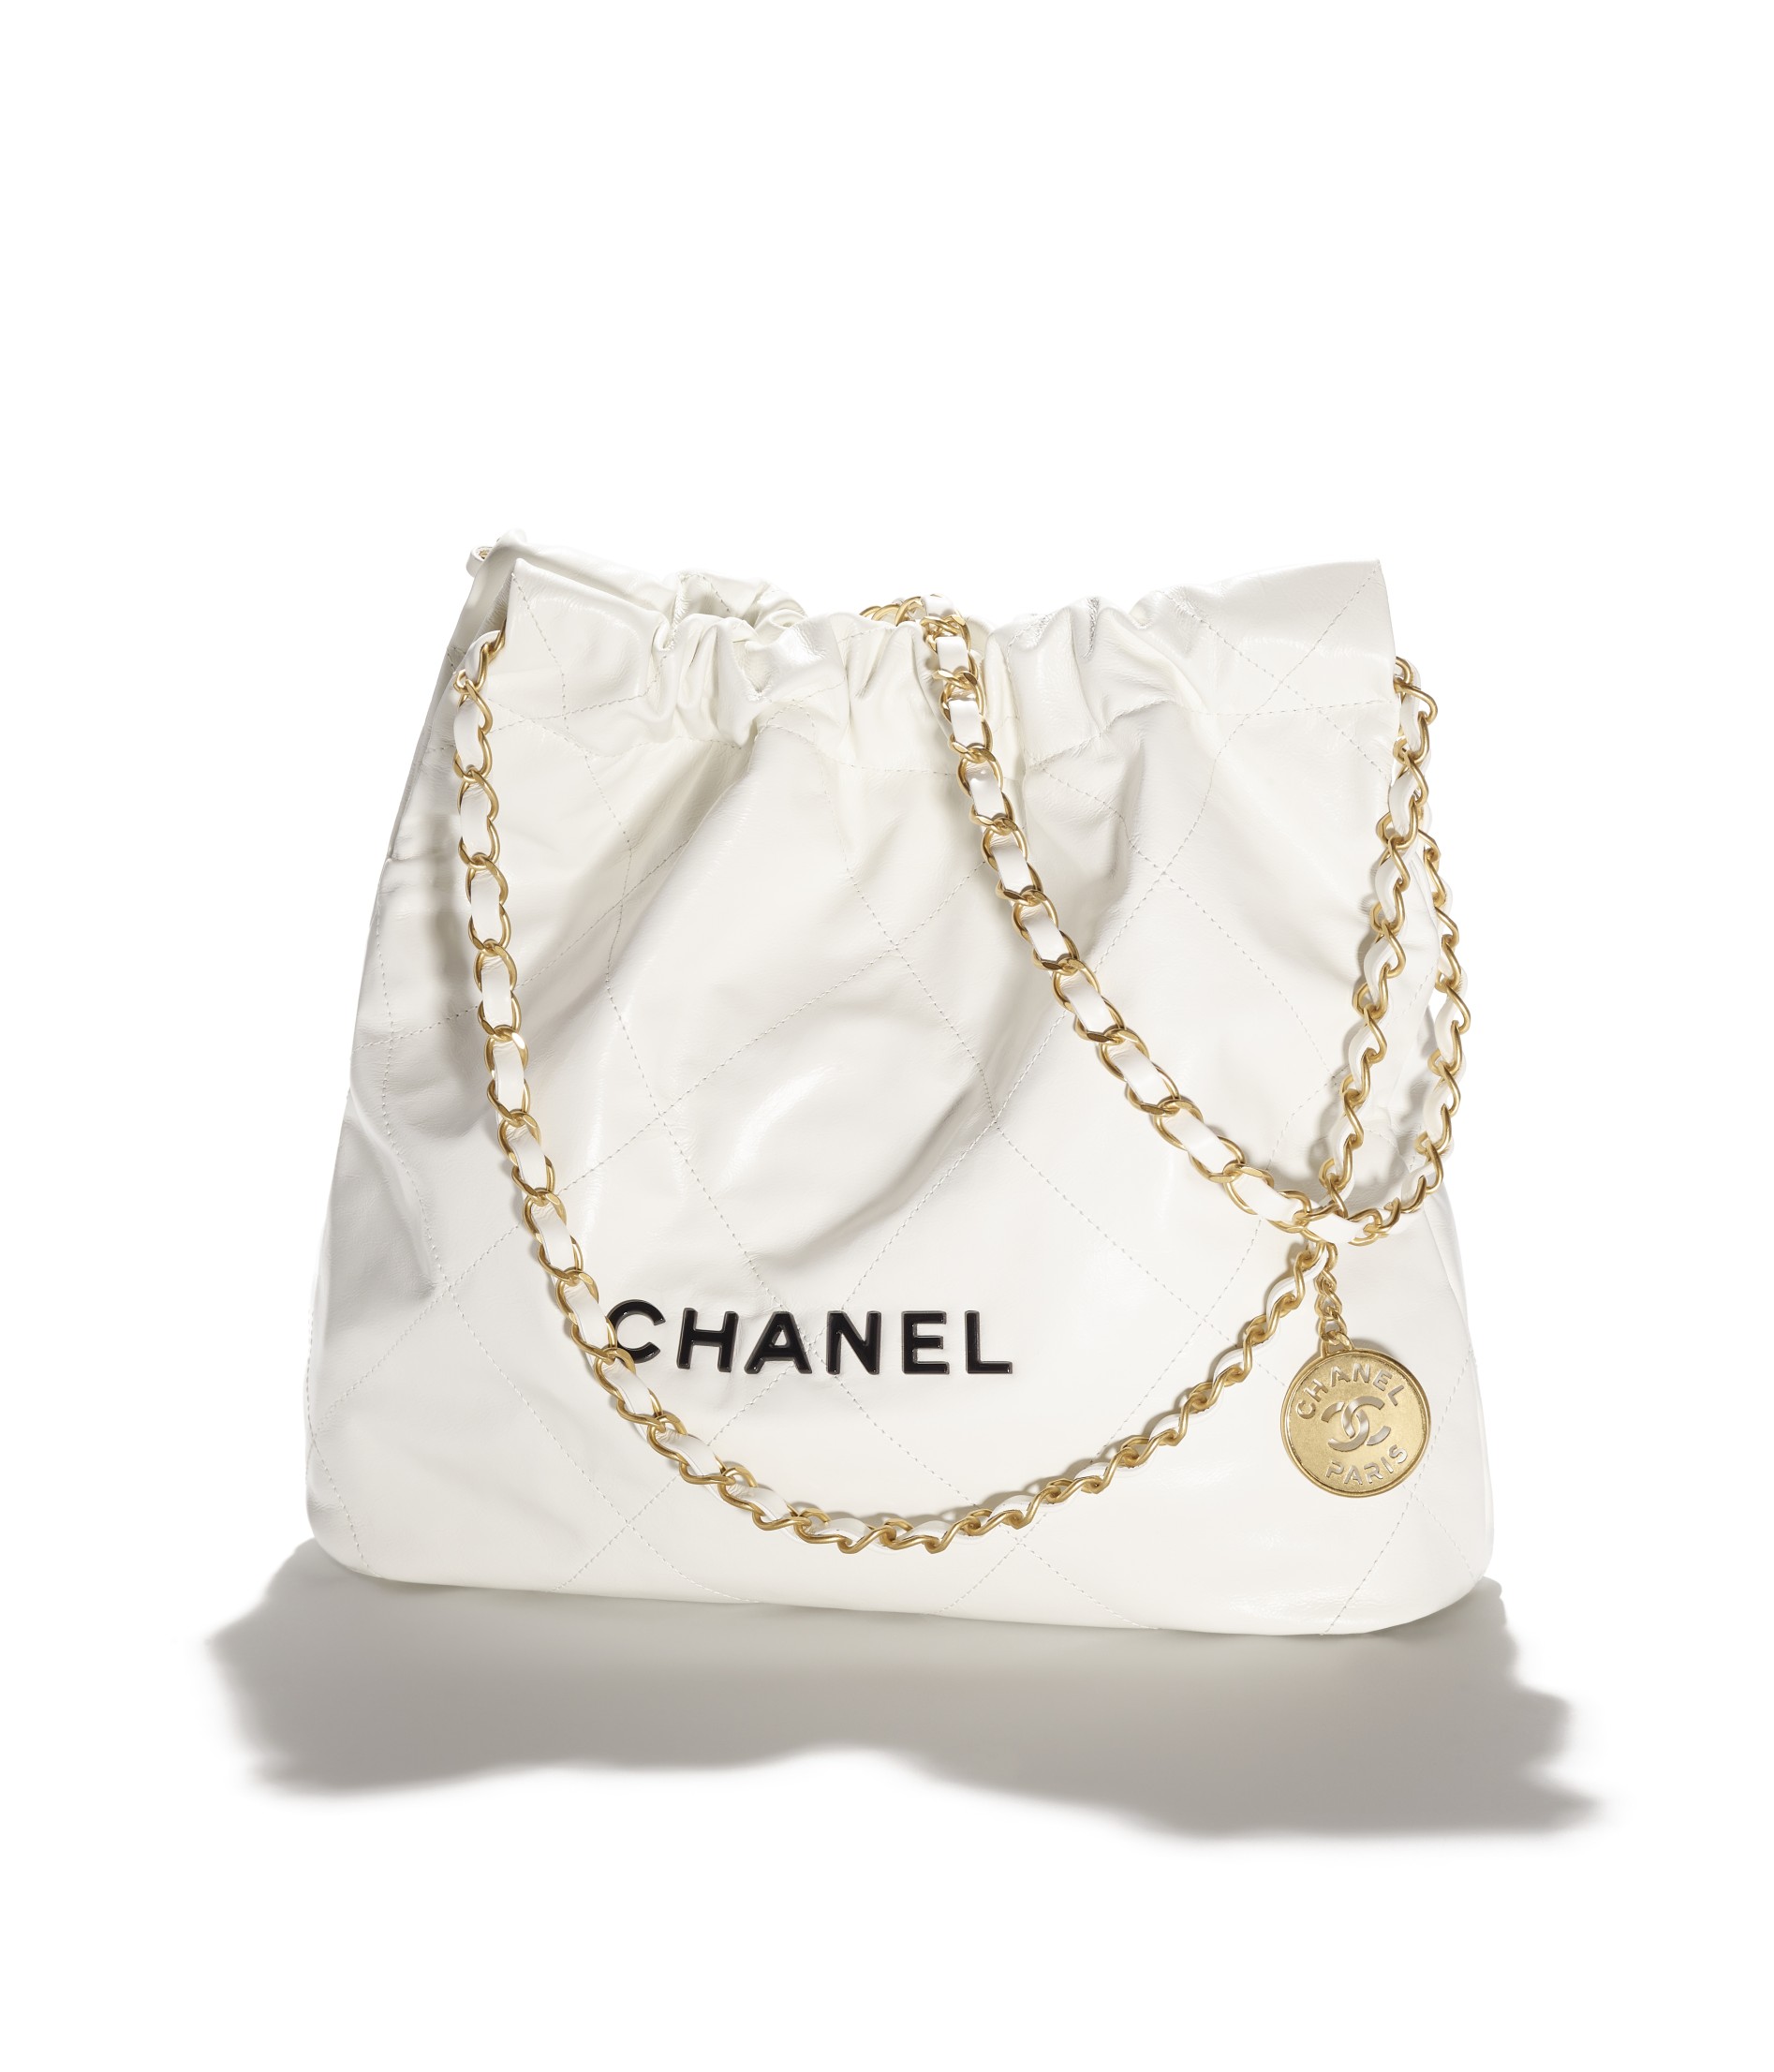 กระเป๋ารุ่น 'CHANEL 22' จากแบรนด์ CHANEL โดยฝีมือการสร้างสรรค์ของ Virginie Viard